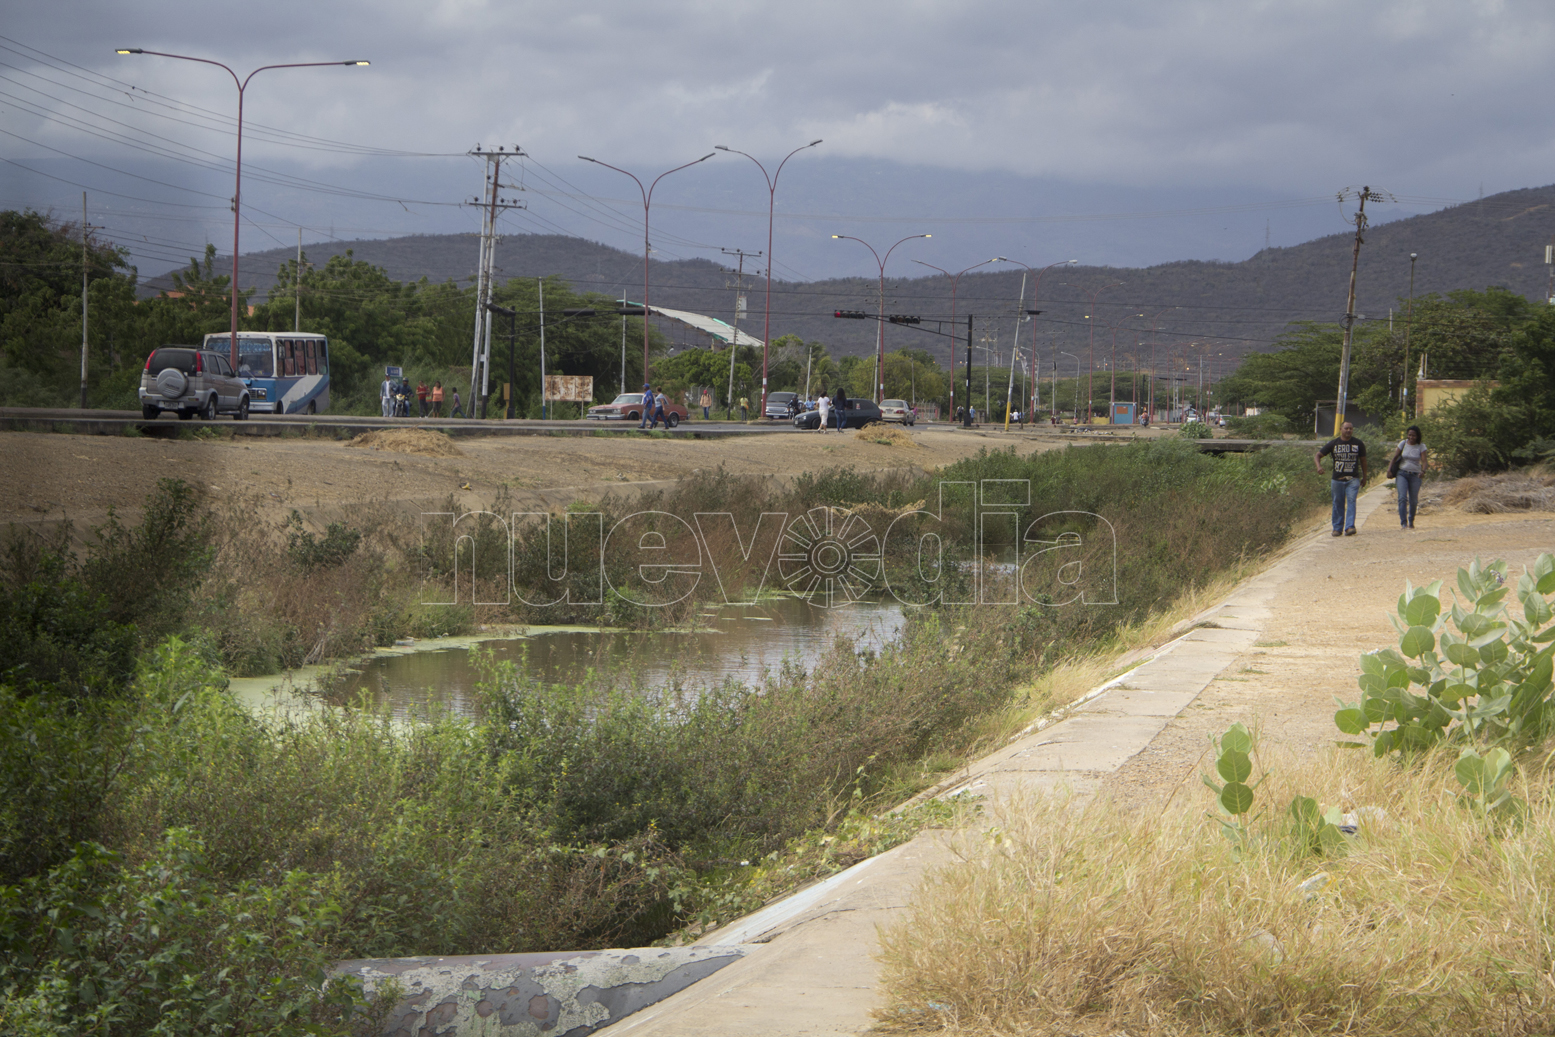  Habitantes denuncian foco de contaminación en la Quebrada Coro